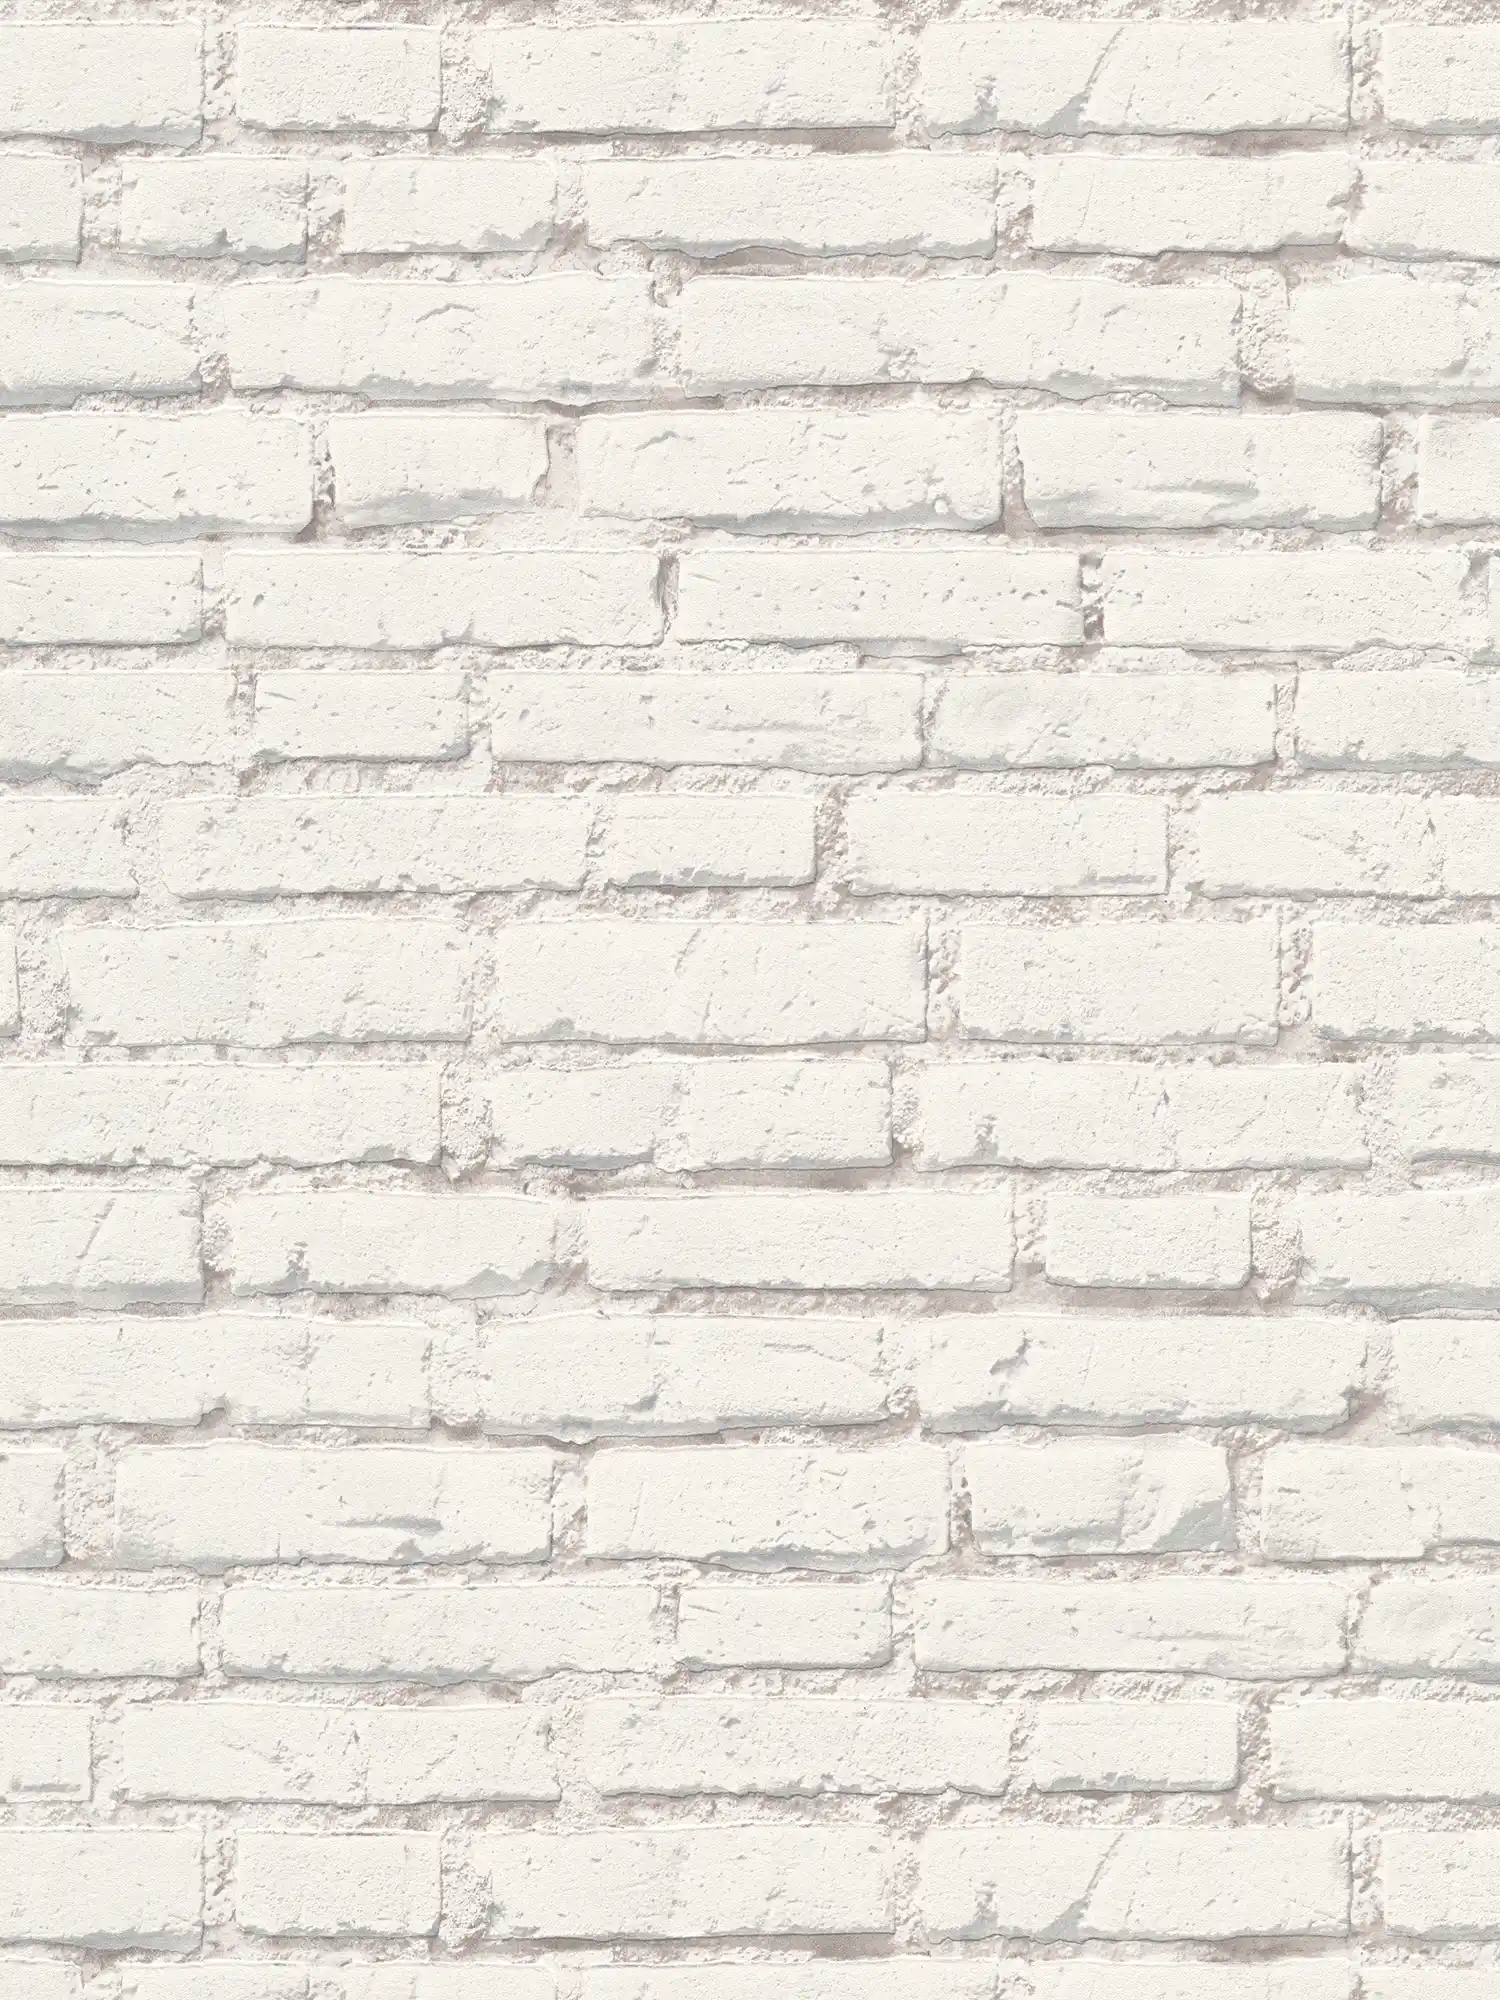 Tapete mit Backsteinmauer mit weißen Steinen und Fugen – Weiß, Grau
